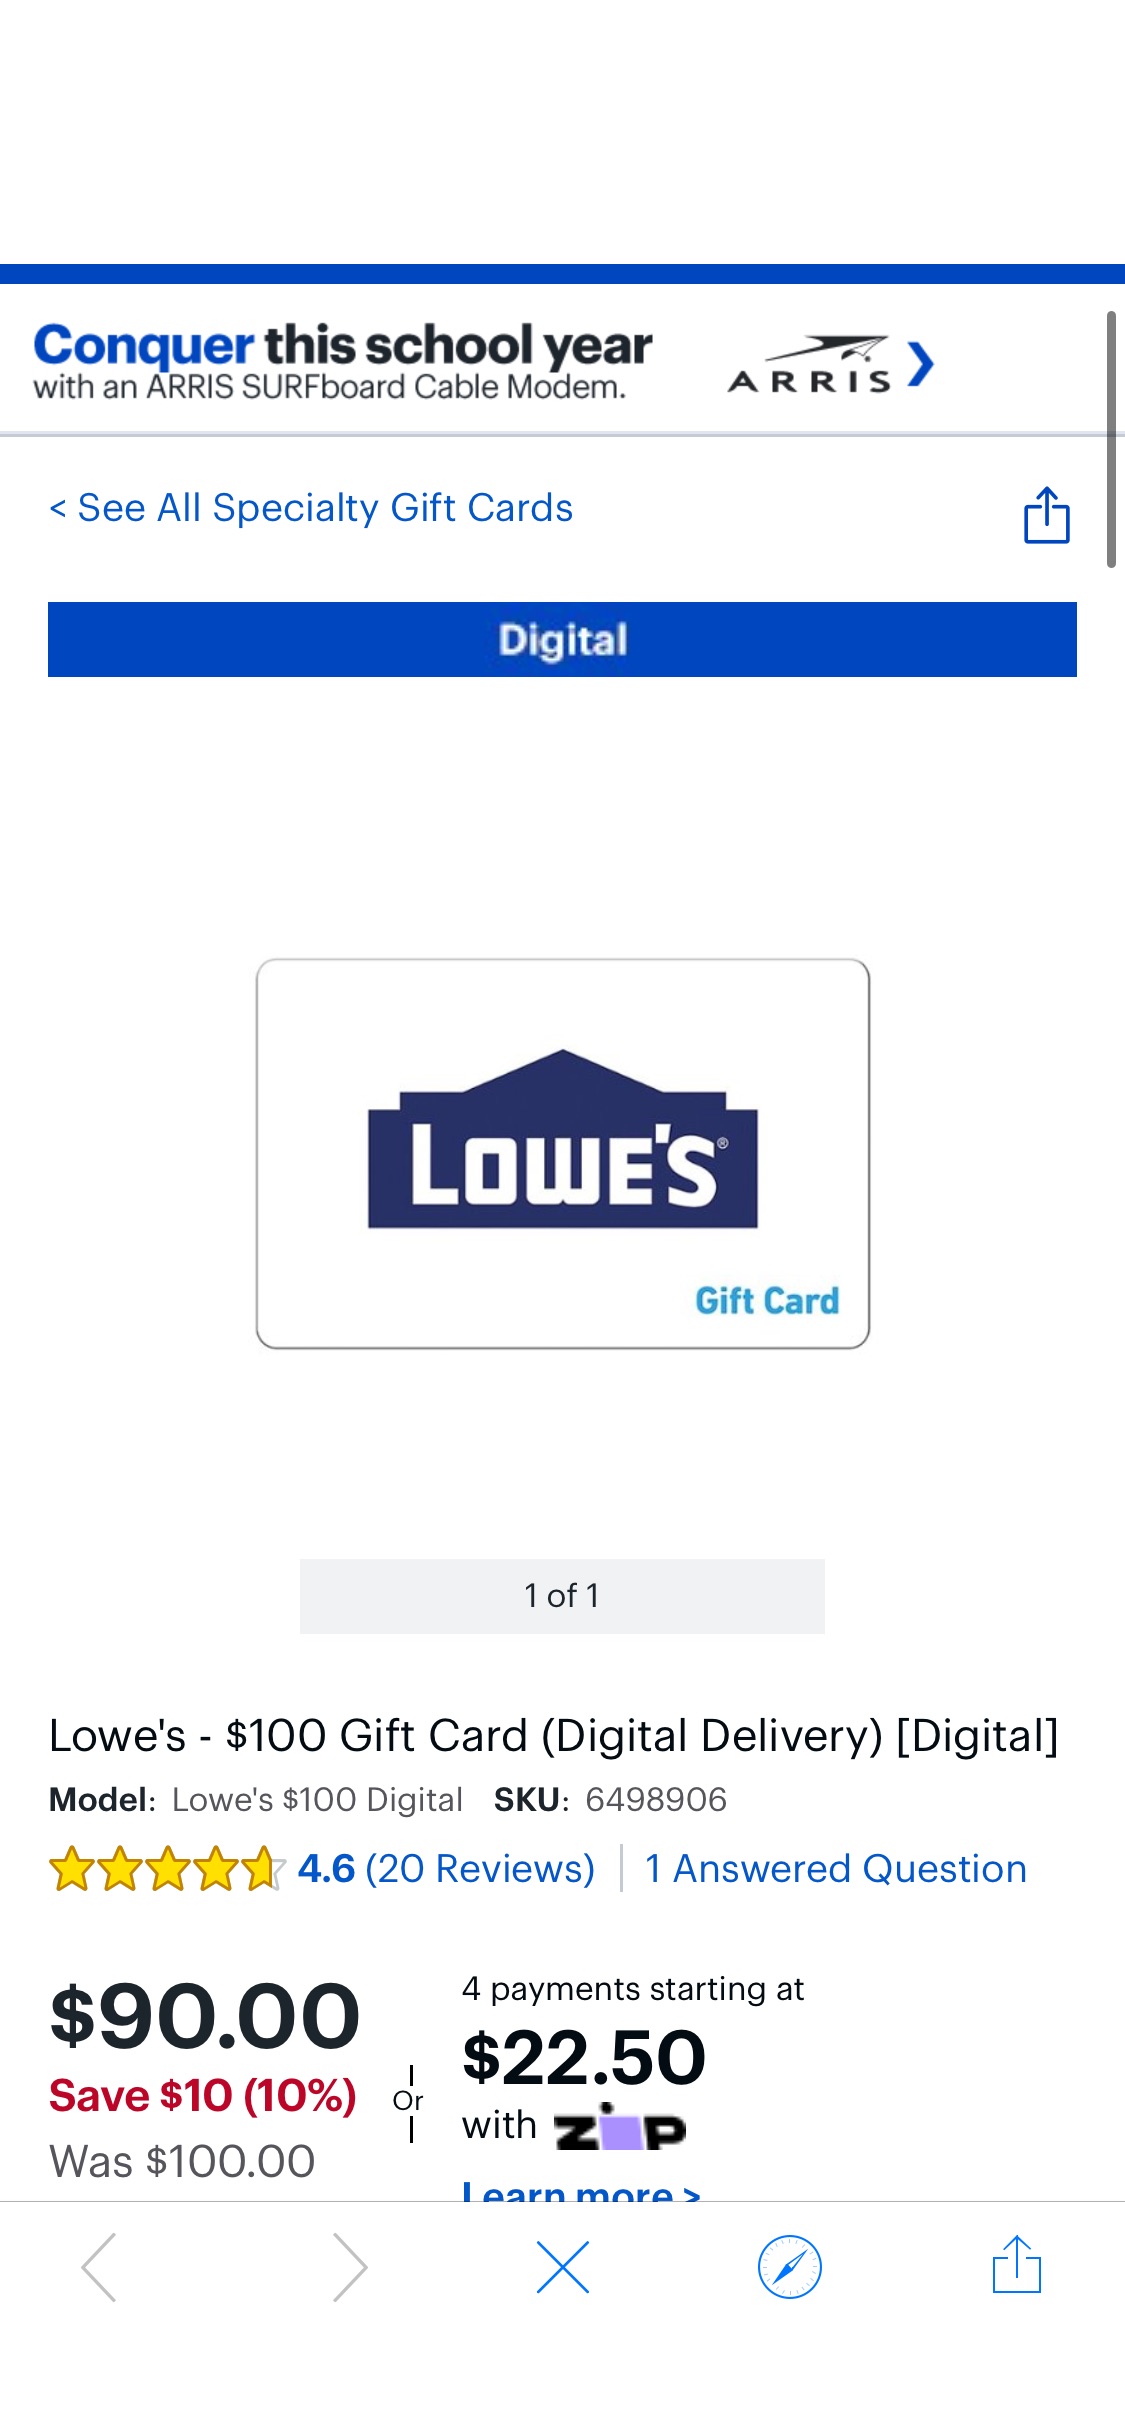 Lowe's $100 Gift Card (Digital Delivery) [Digital] Lowe's $100 Digital - Best Buy